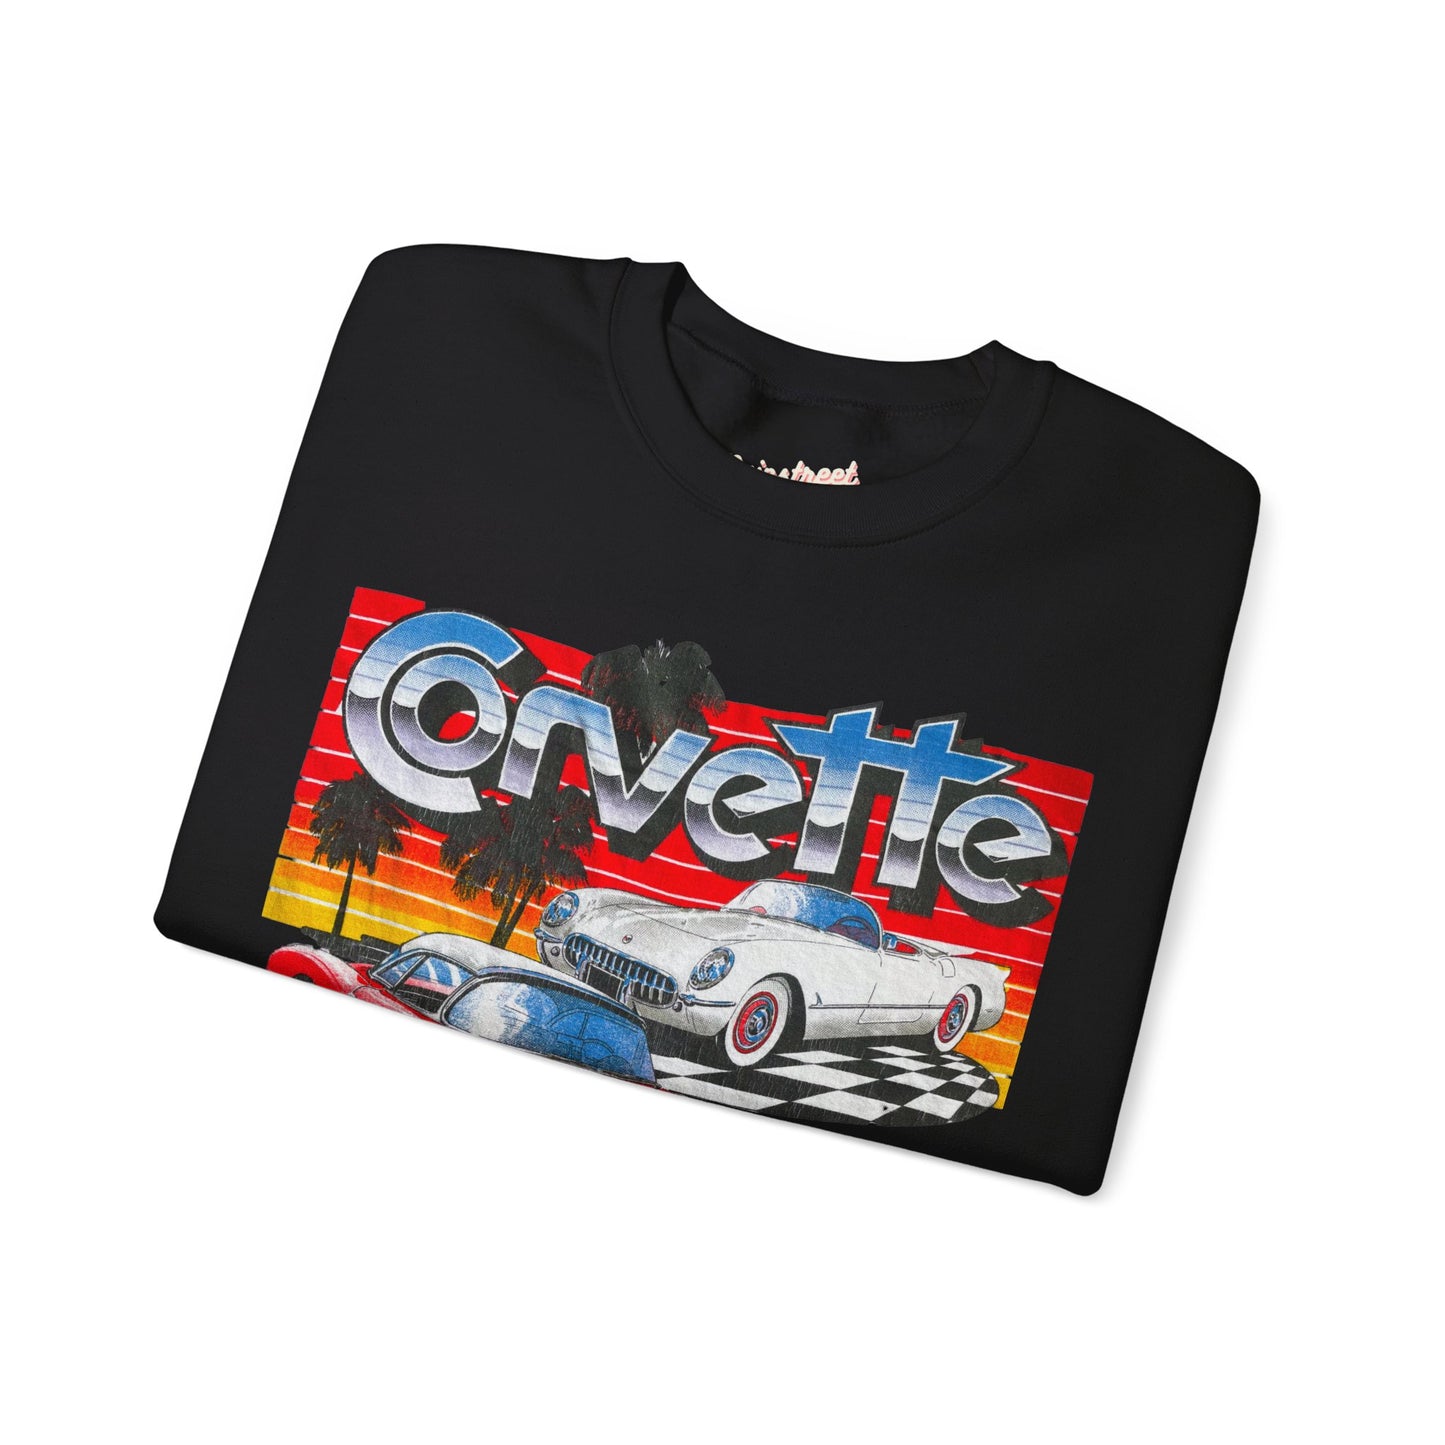 Vintage Corvette Sweatshirt